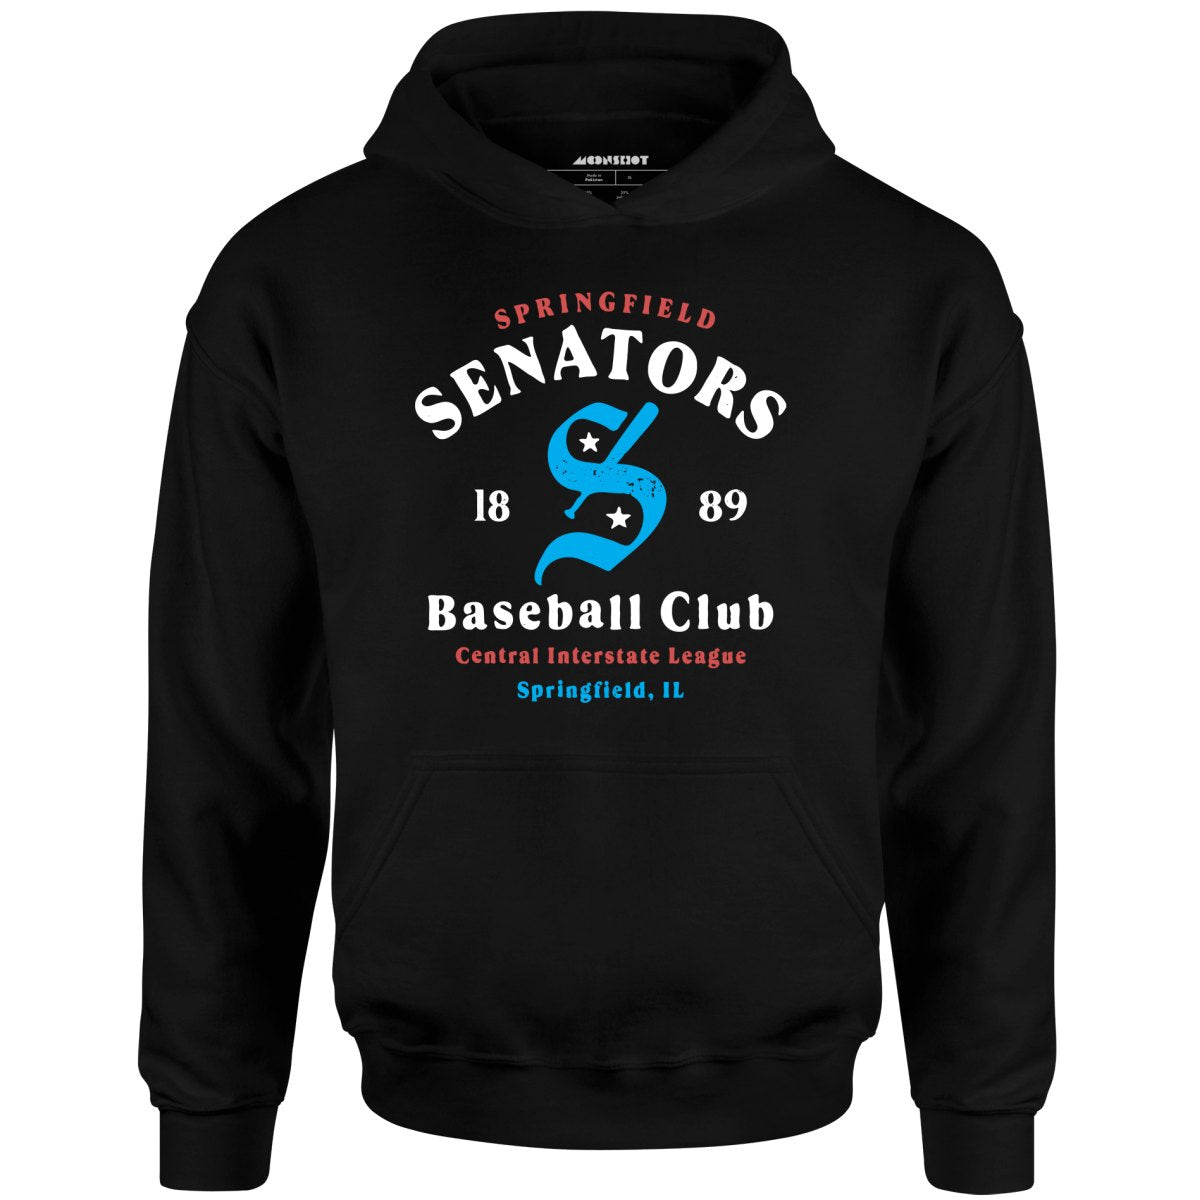 Springfield Senators - Illinois - Vintage Defunct Baseball Teams - Unisex Hoodie